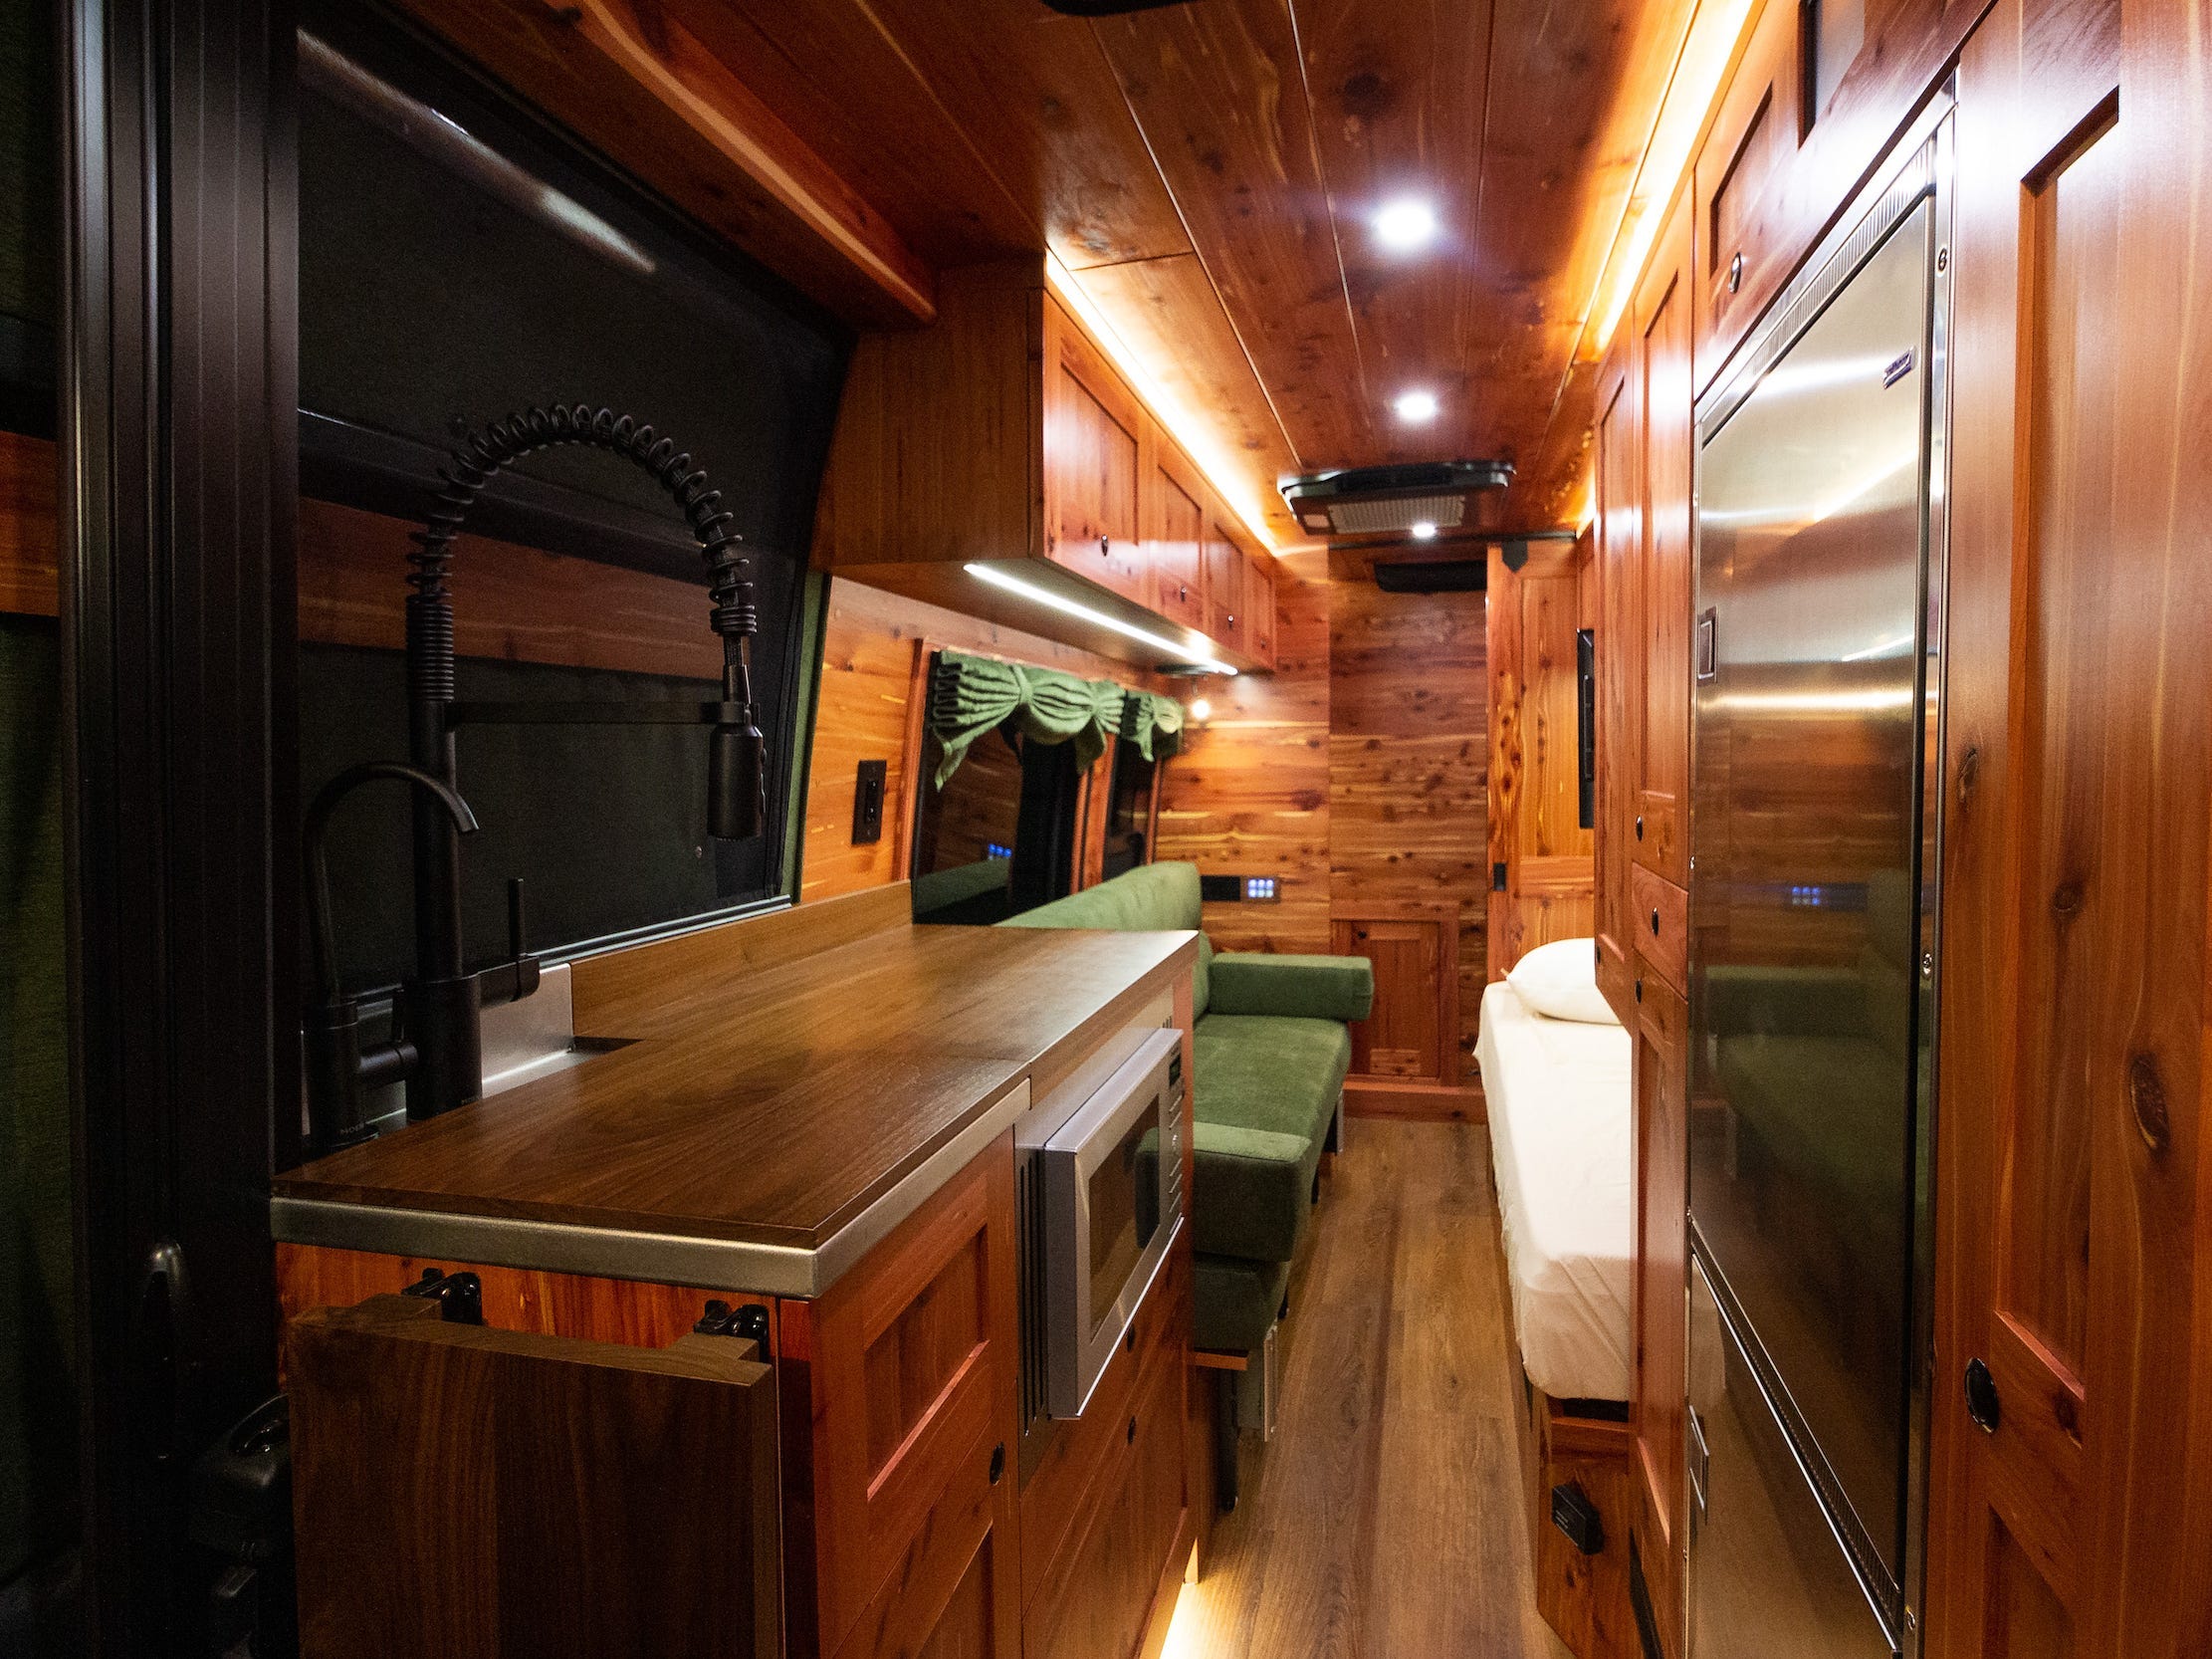 Ein weiter Blick in den Innenraum des Vans zeigt Sitzgelegenheiten, Küche und Bett.  Der Innenraum ist mit dunklem Holz ausgekleidet.